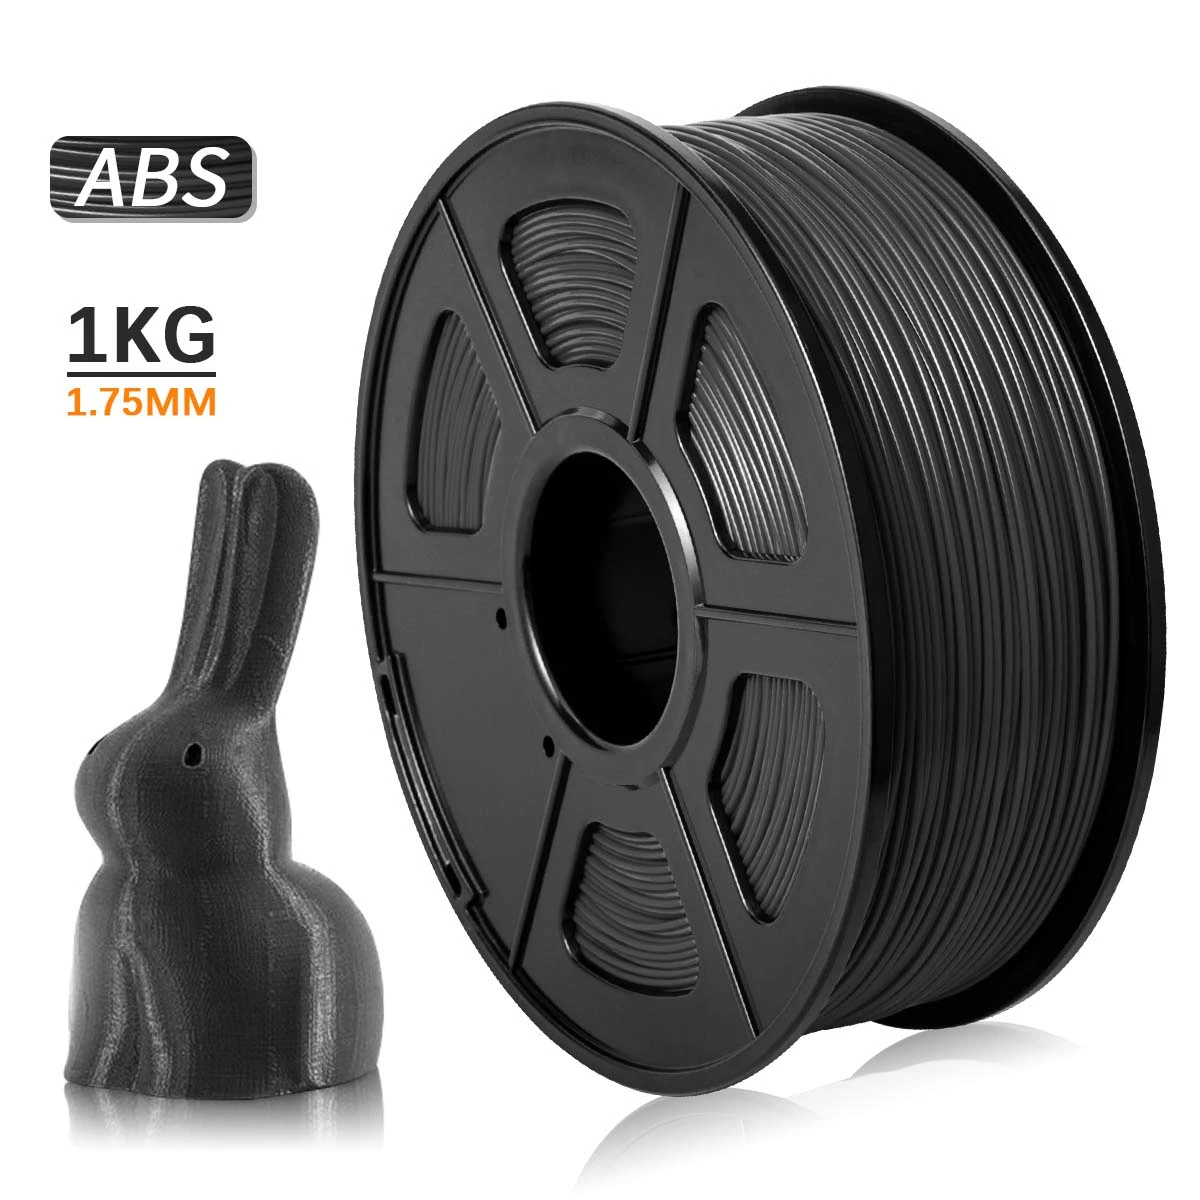 Flash Sale Filamento de impresión 3D ABS de 1,75 MM, colores negros, adecuado para materiales de dibujo de alta resistencia pBQKMe3Nwzy